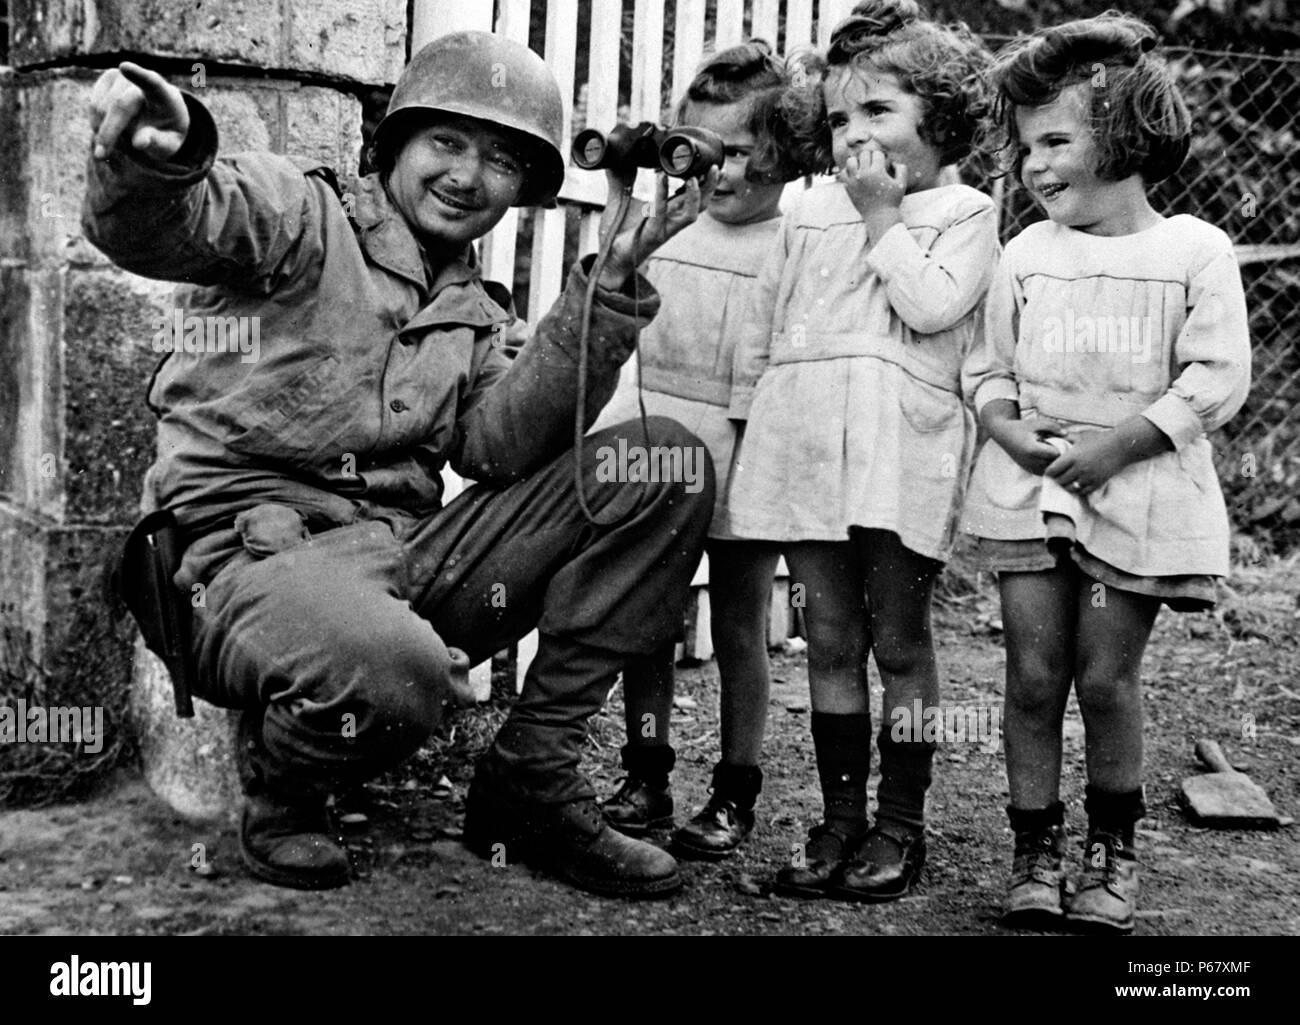 Bild zeigt einen amerikanischen Soldaten holding Fernglas bis zu drei kleine Mädchen, so dass Sie einen Blick durch die Linse in der Lage. Nach der Befreiung der Normandie, während des Zweiten Weltkrieges 1944. Stockfoto